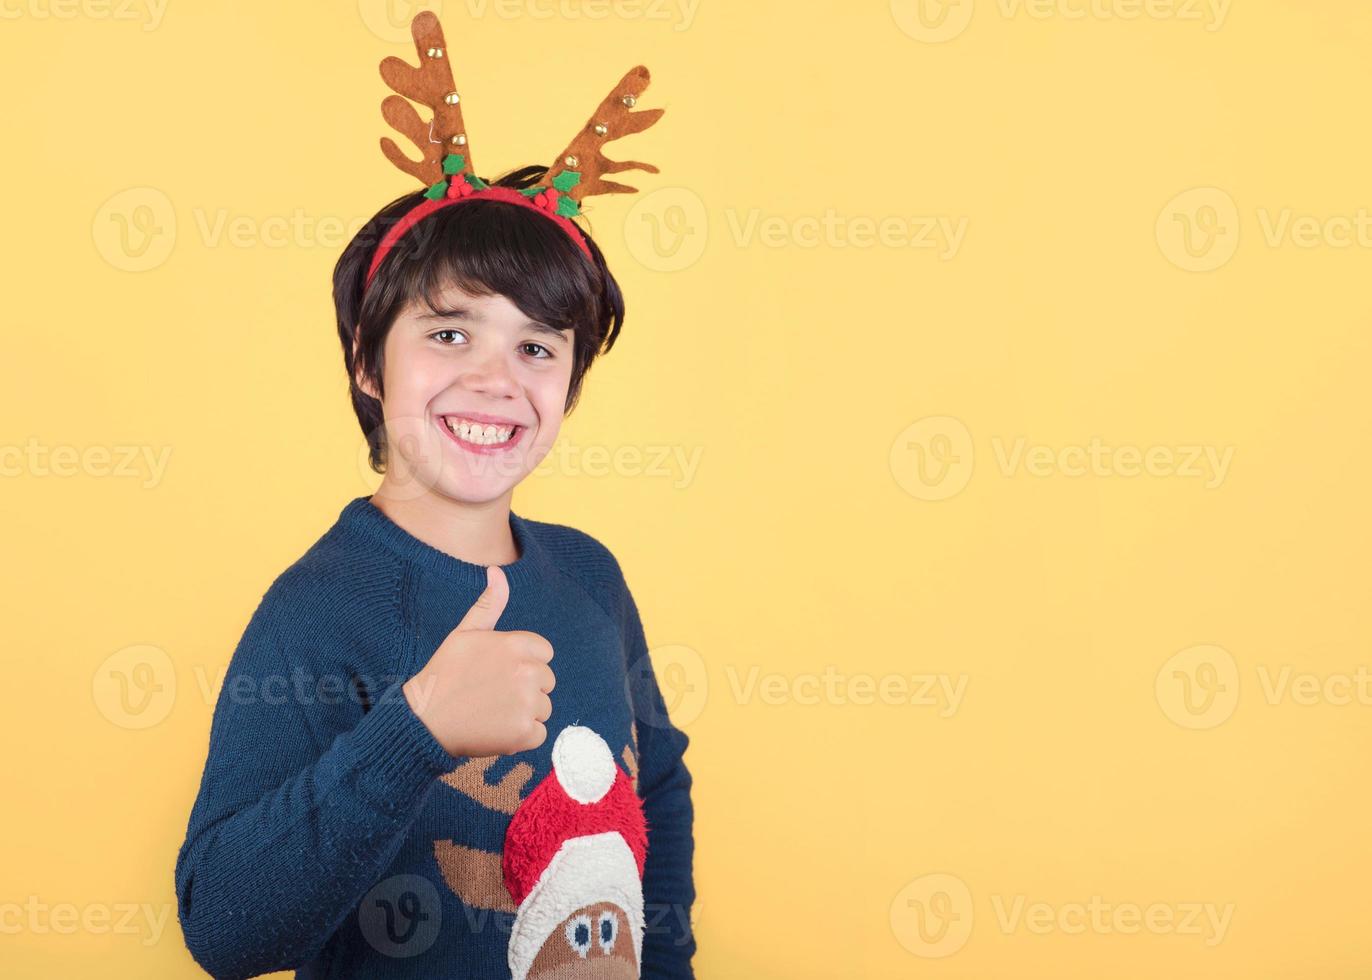 criança engraçada em uma fantasia de natal de rena rudolph foto